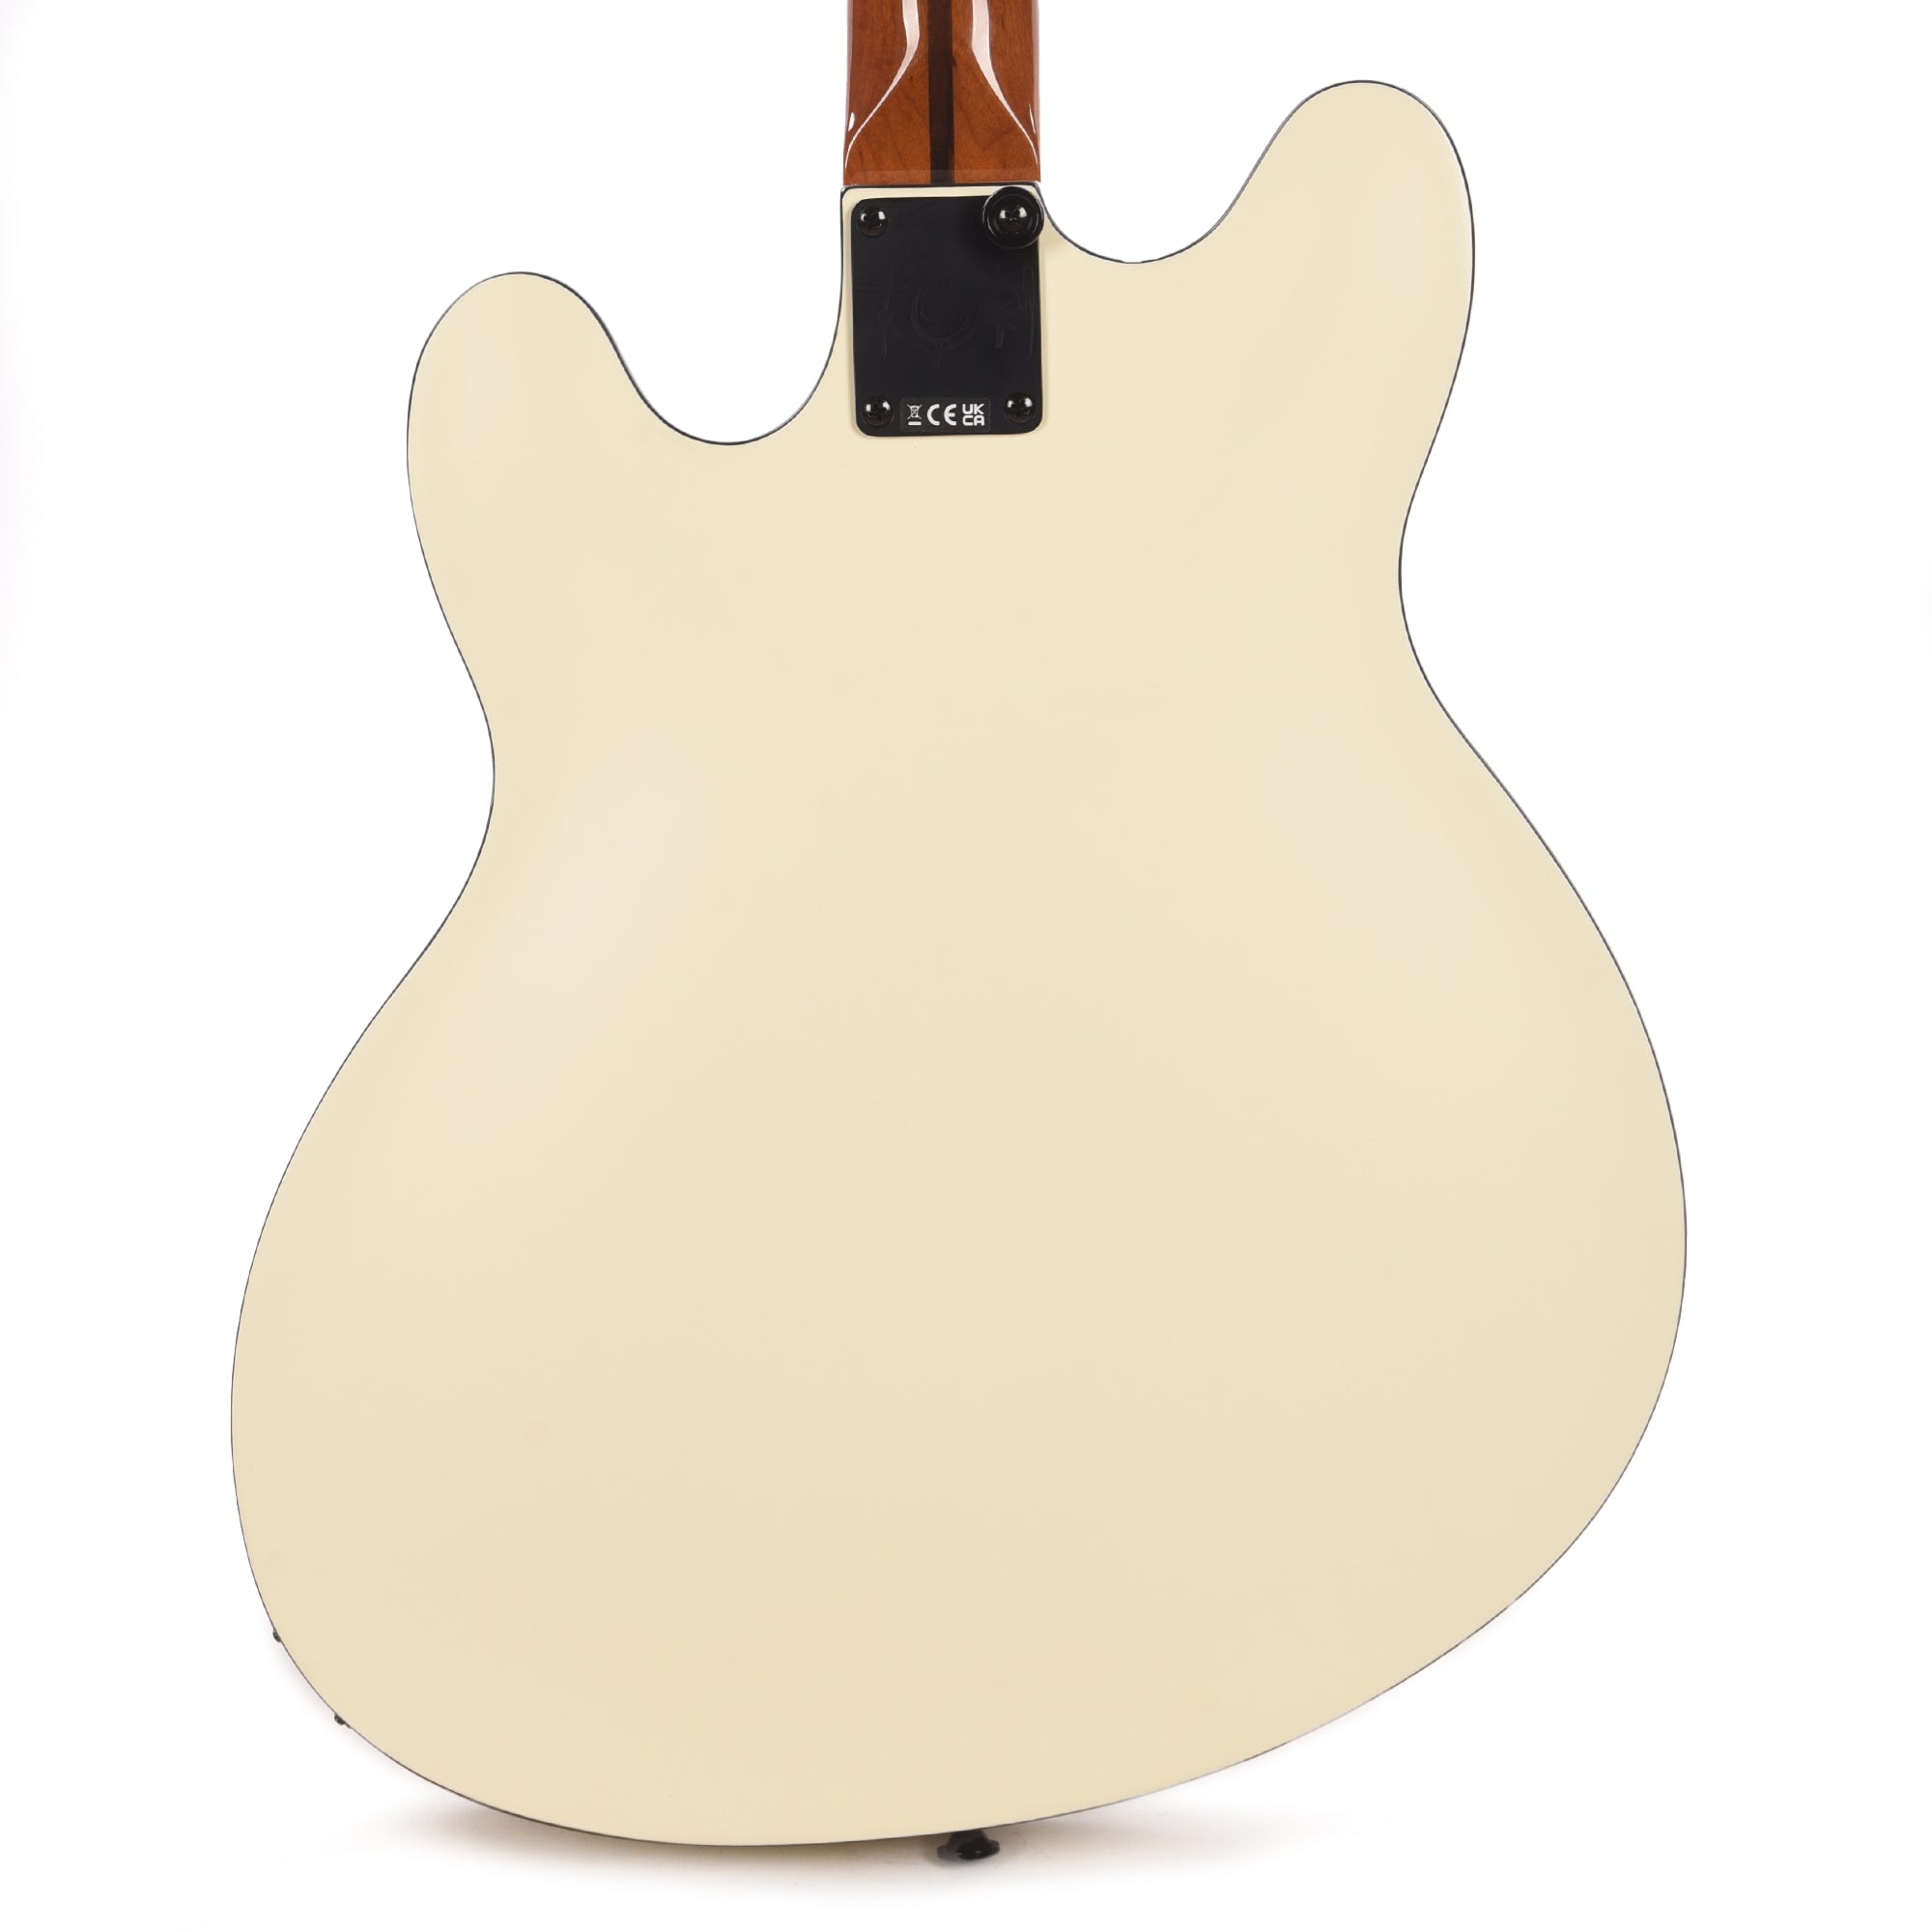 Fender Artist Tom DeLonge Starcaster Satin Olympic White